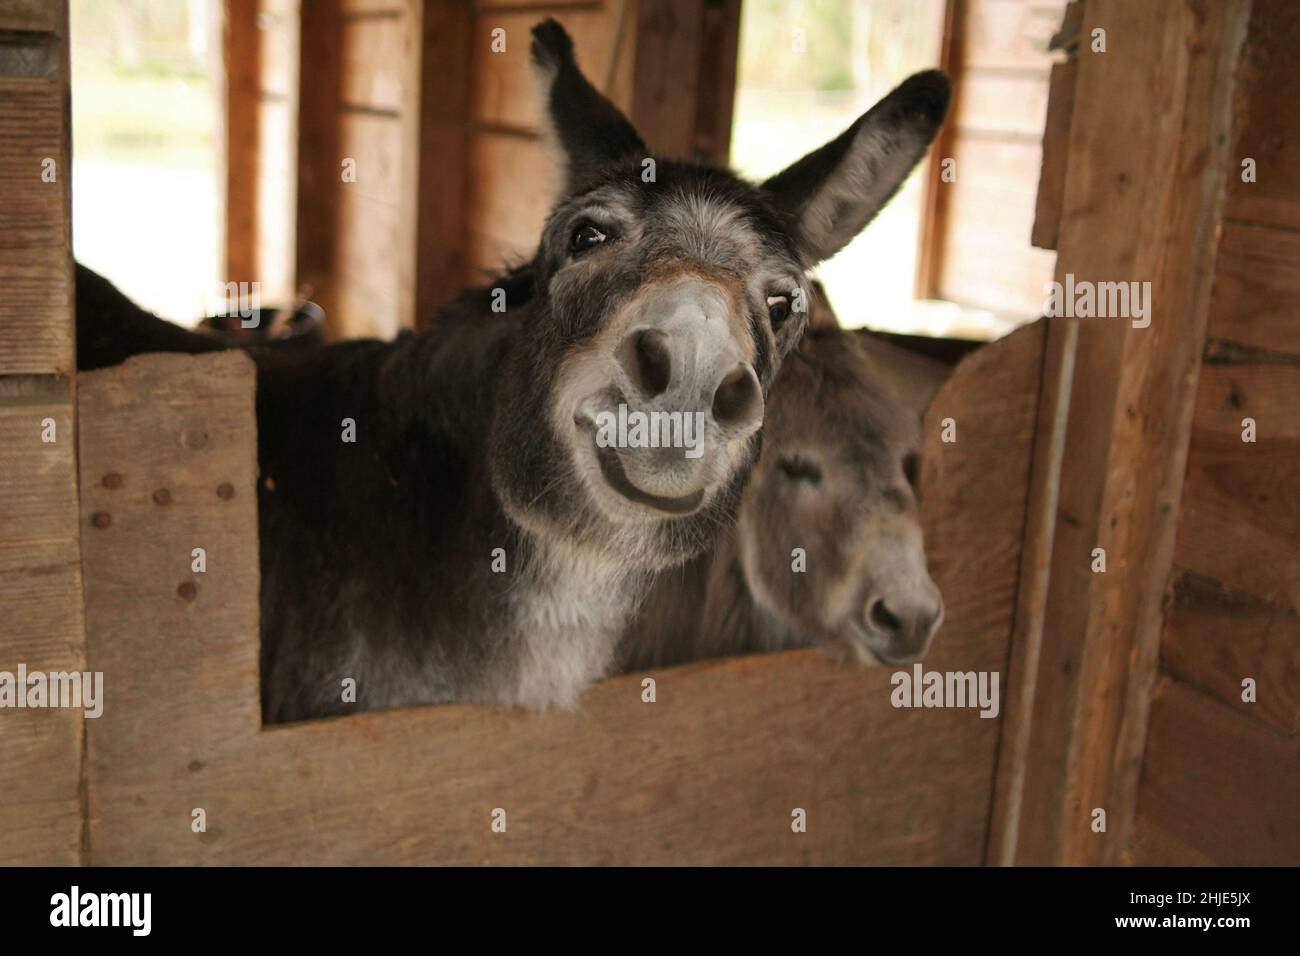 Einer von einem Paar Esel grinst humorvoll, während er über seine stabile Tür schaut Stockfoto